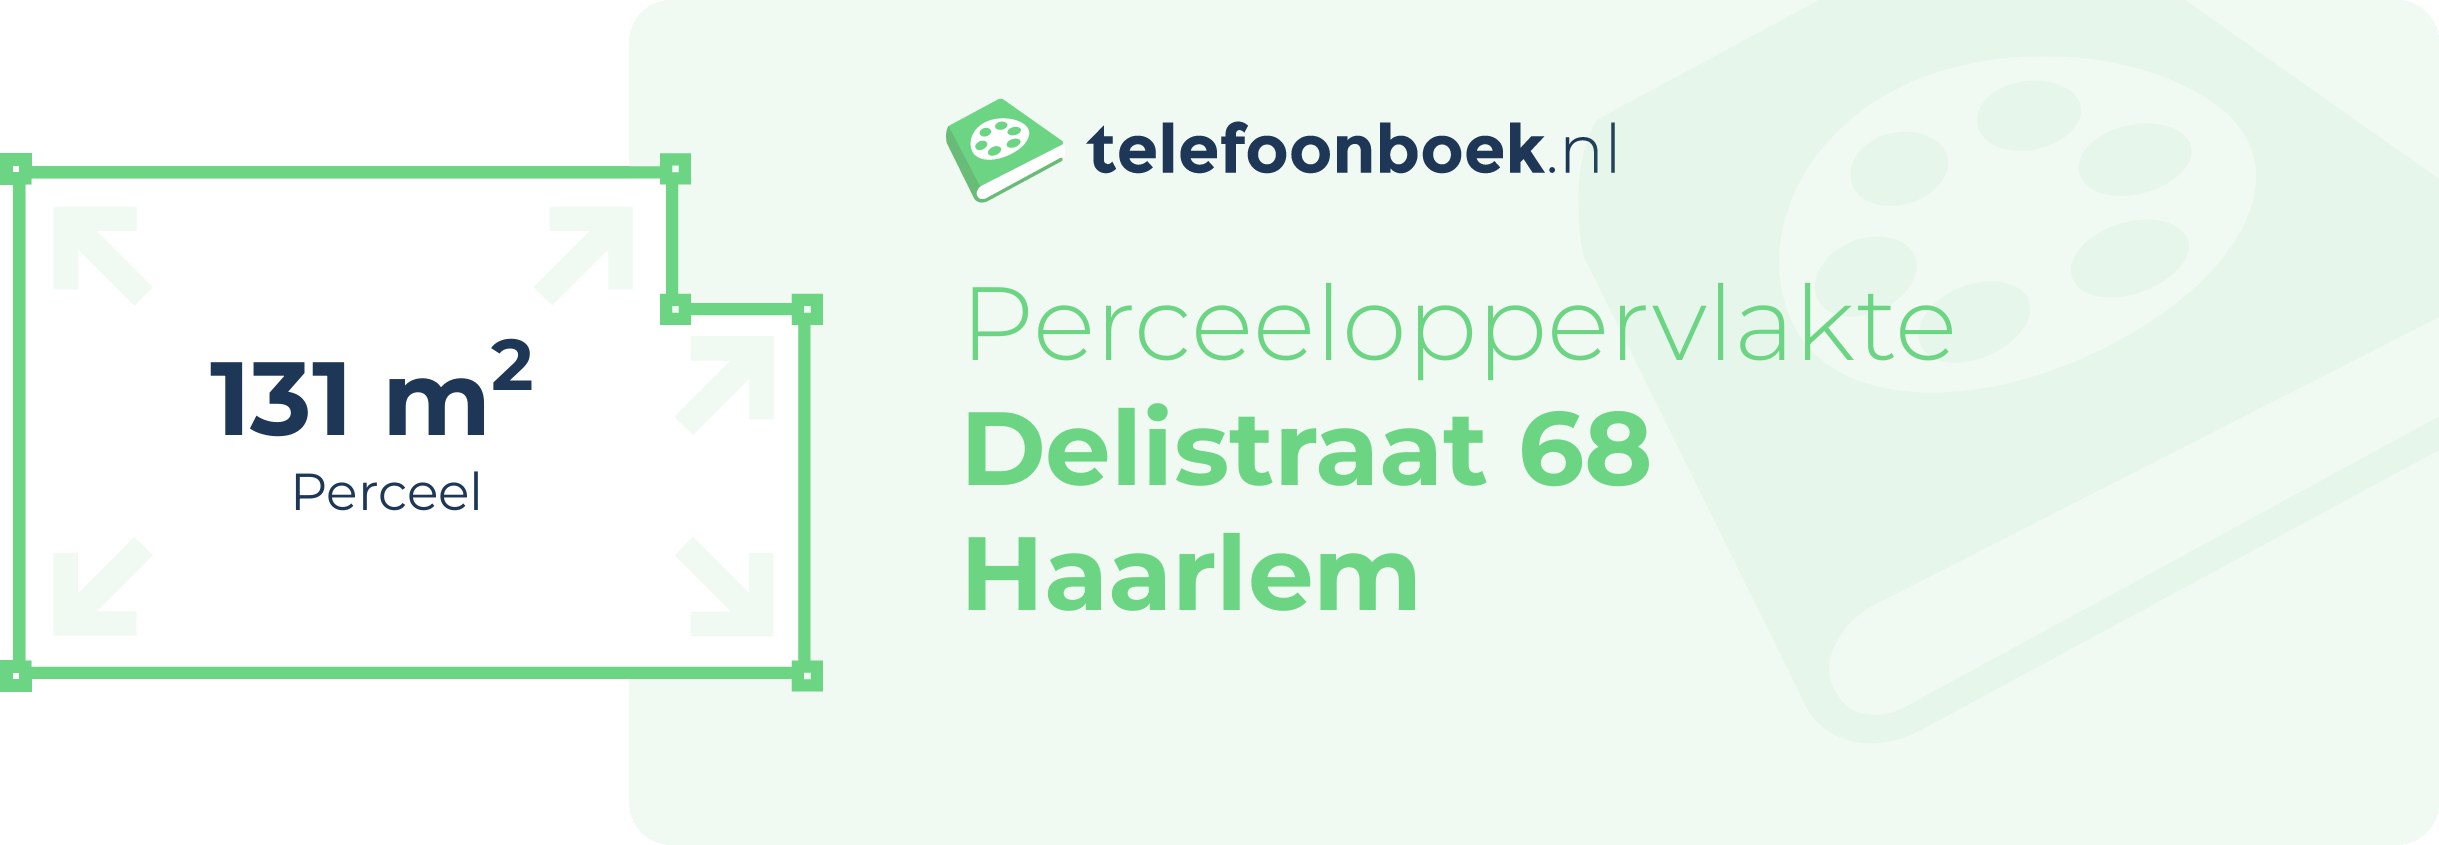 Perceeloppervlakte Delistraat 68 Haarlem